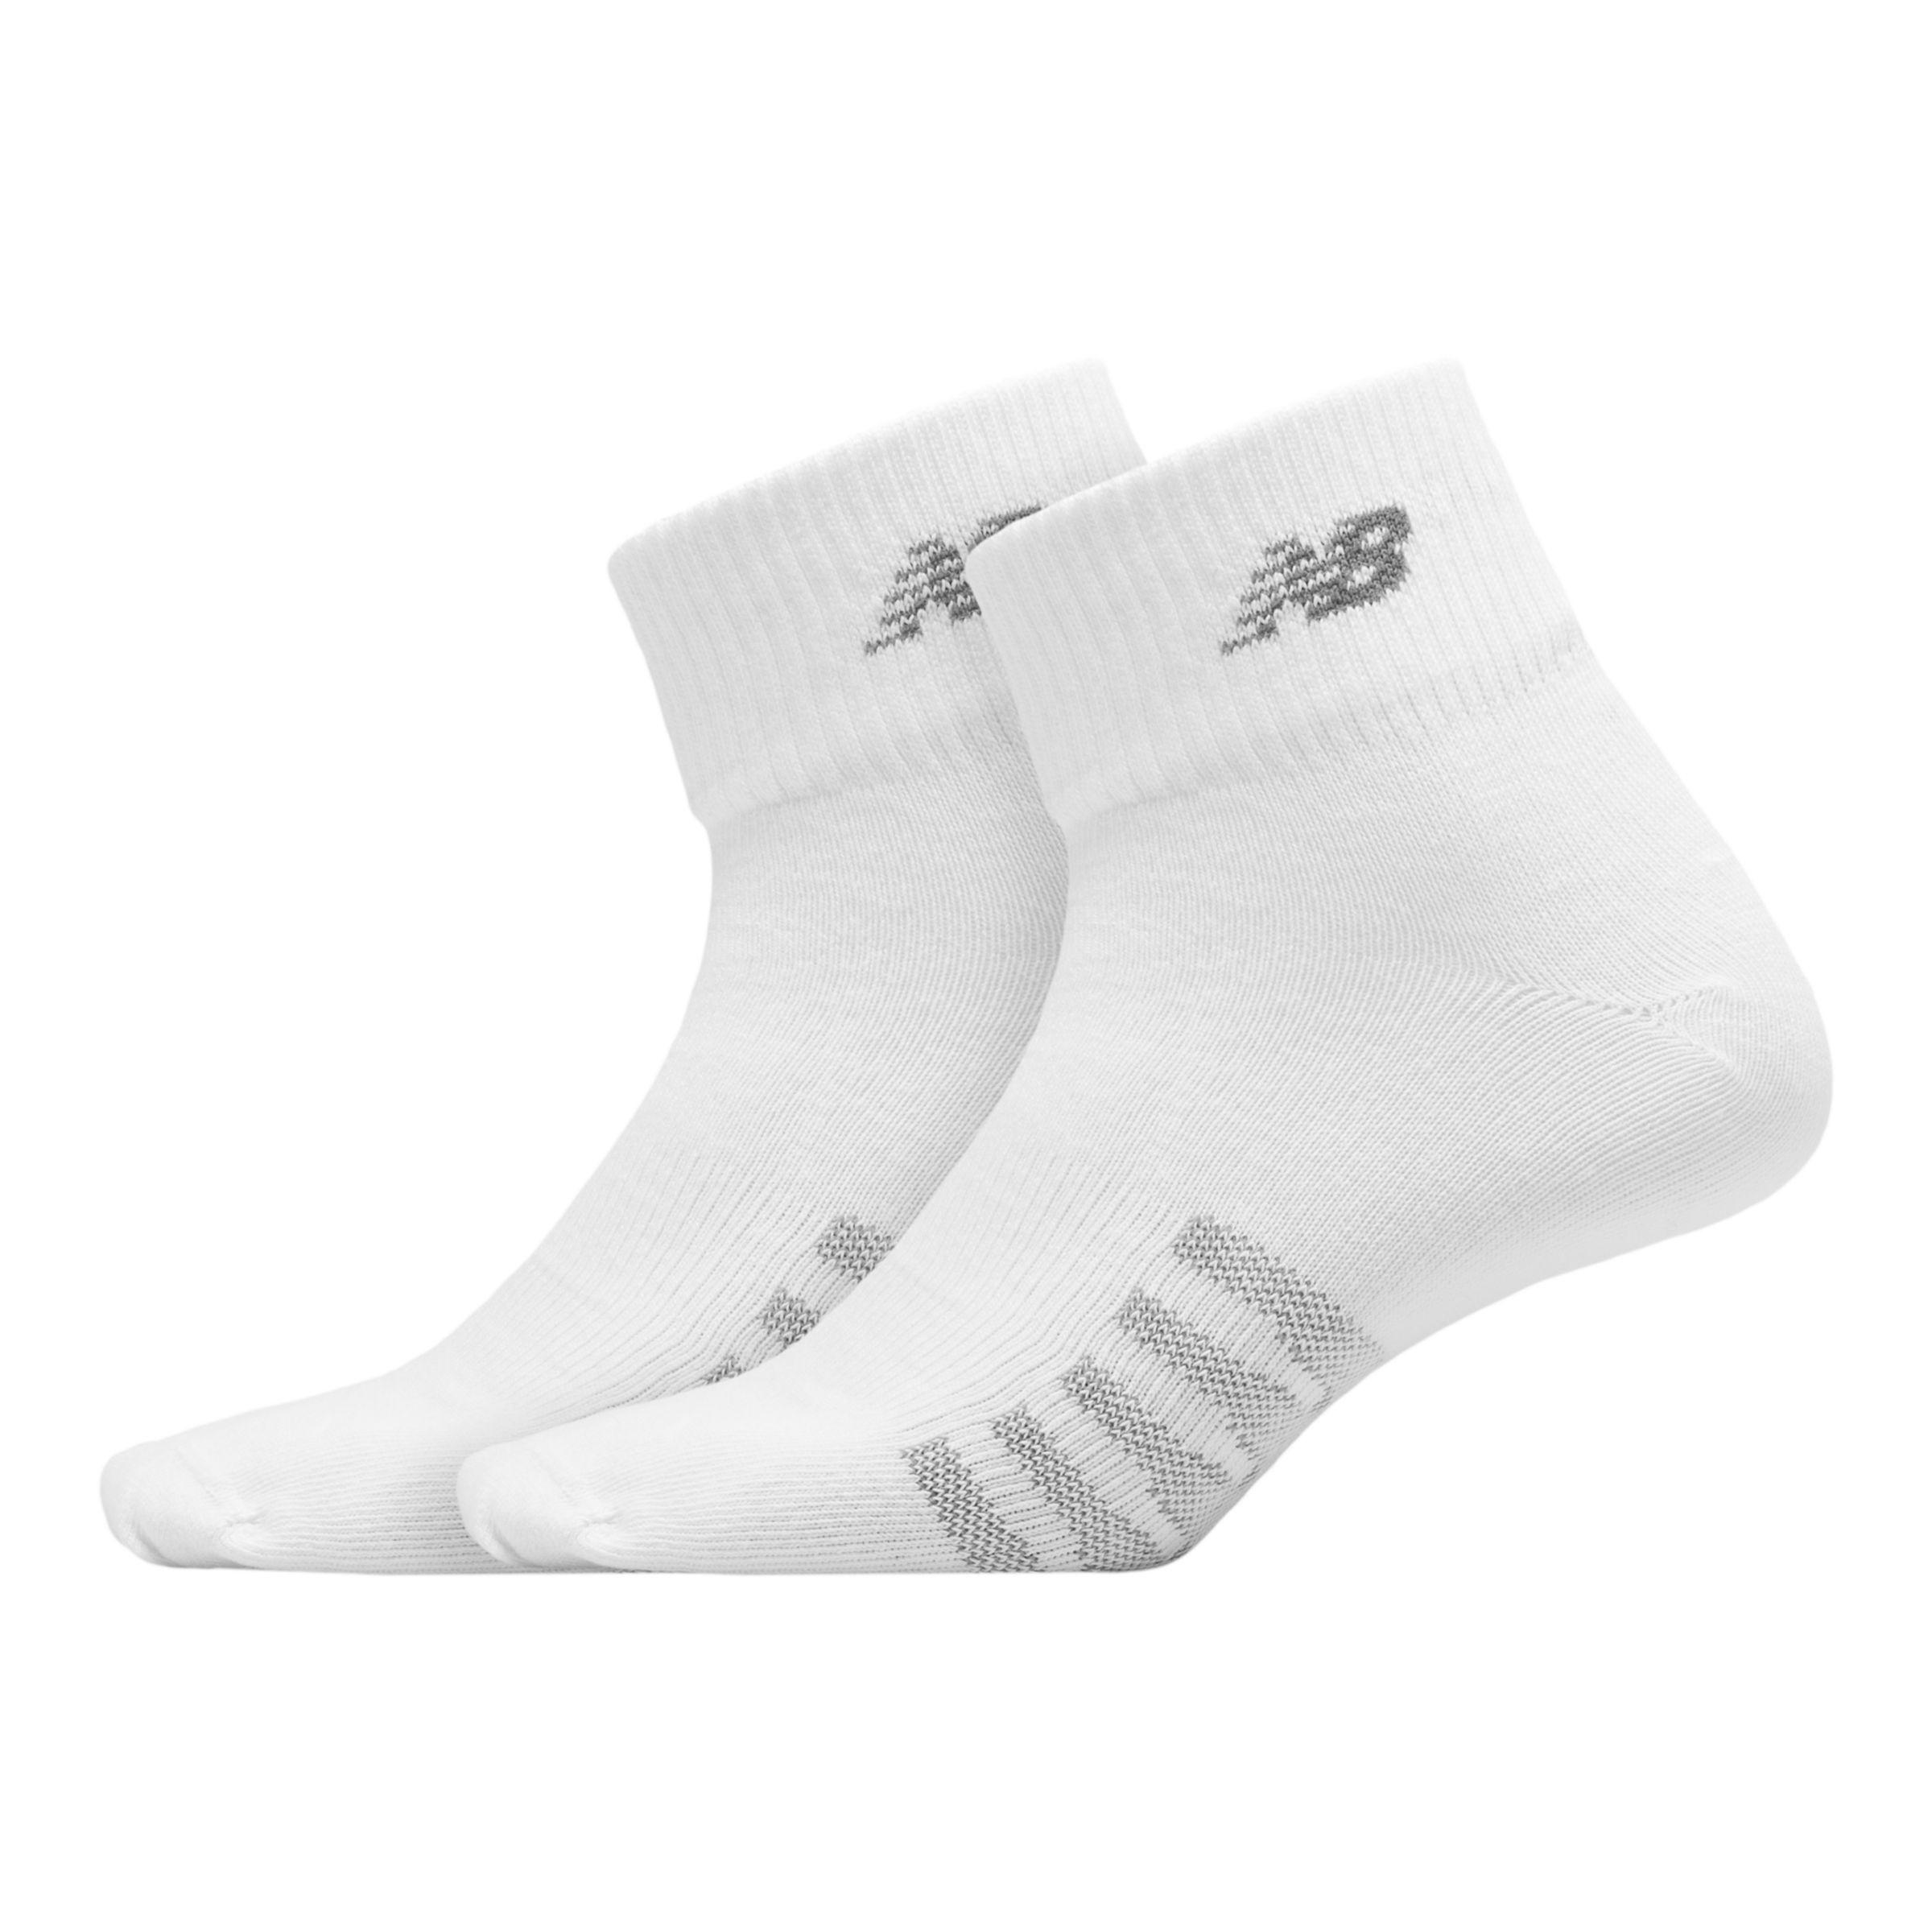 Coolmax Thin Quarter Socks 2 Pack - 1